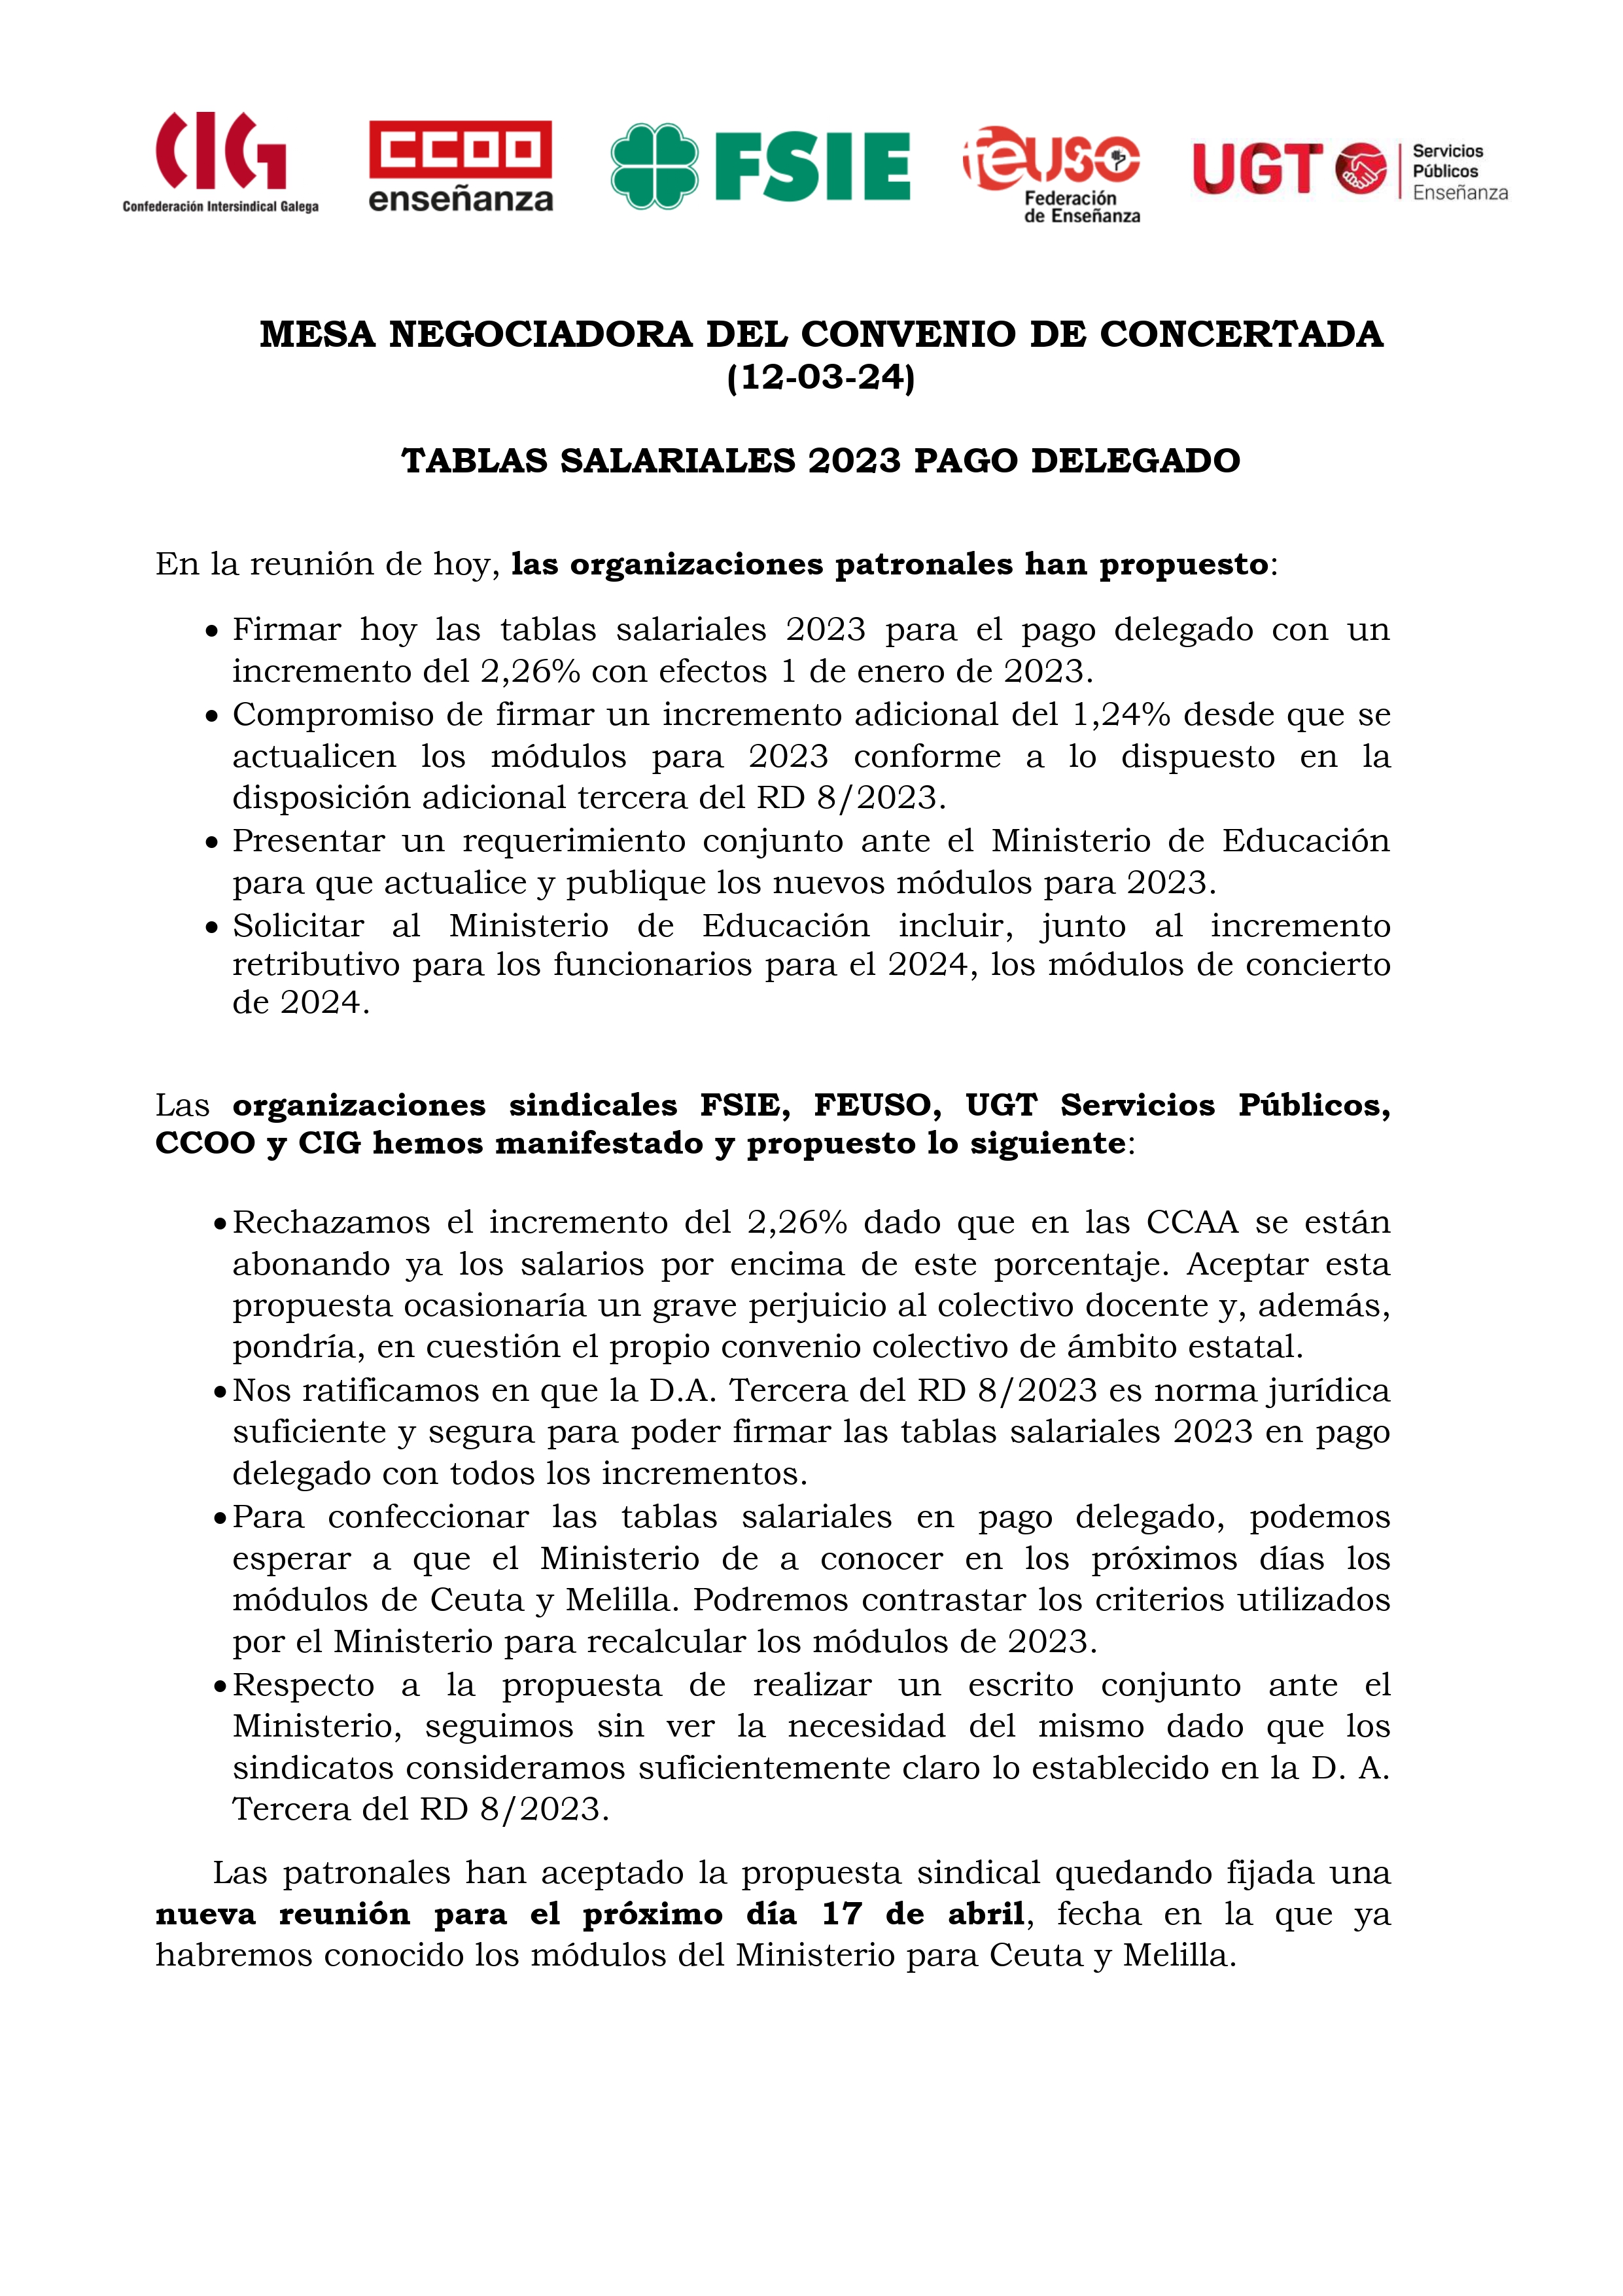 INFORMACIÓN SINDICATOS CONCERTADA 12 03 24 page 0001